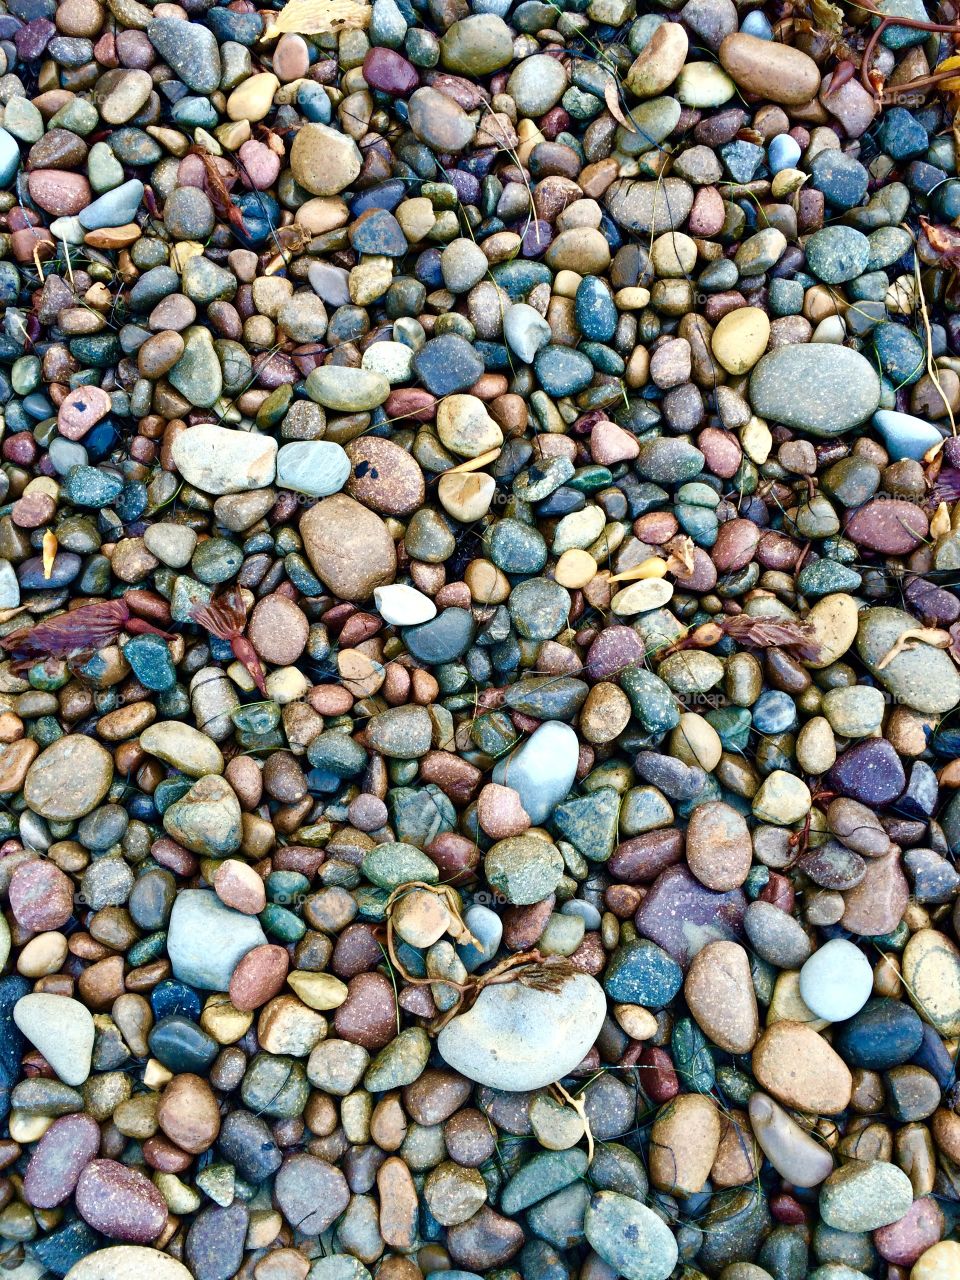 Multicolored stones